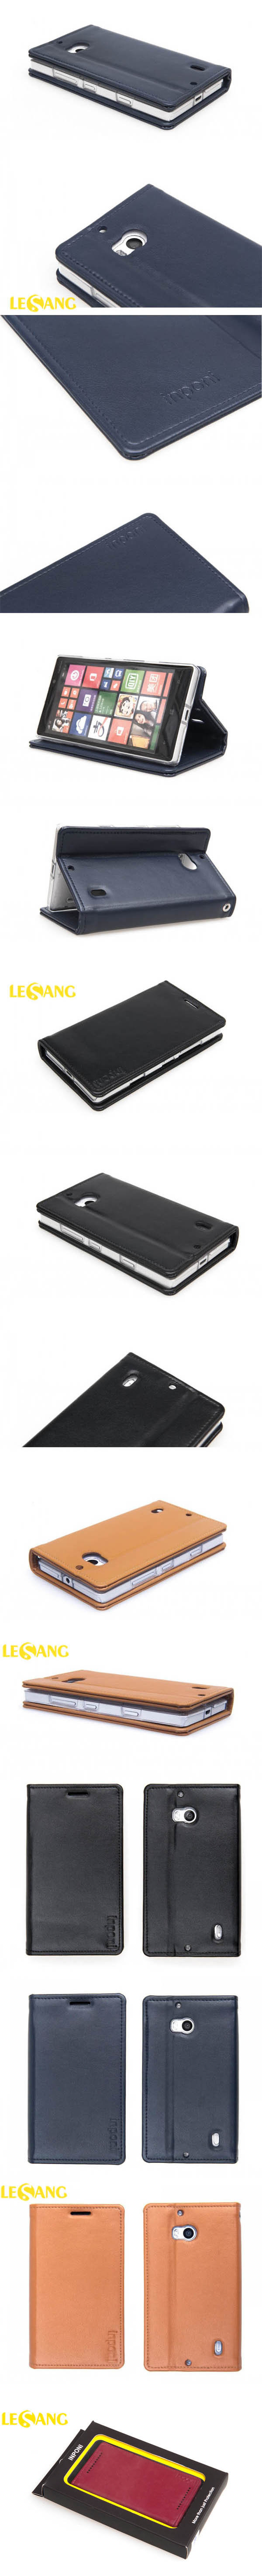 Bao da Lumia 930 INPONI siêu bền 3